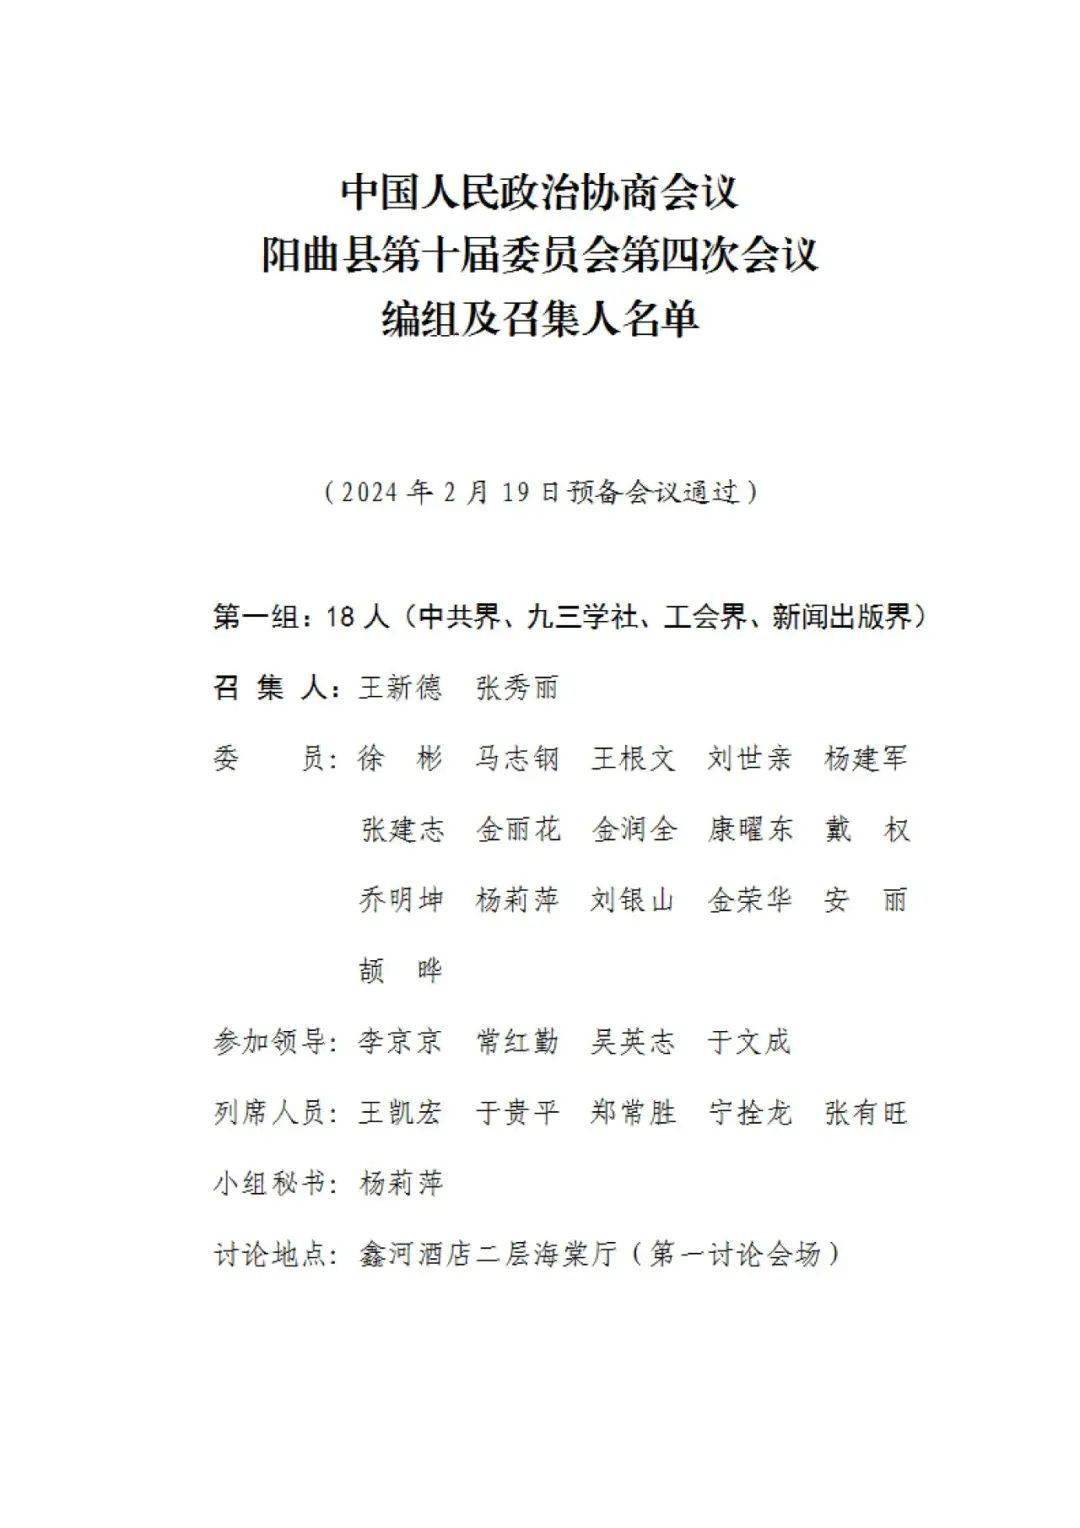 中国人民政治协商会议阳曲县第十届委员会第四次会议编组及召集人名单